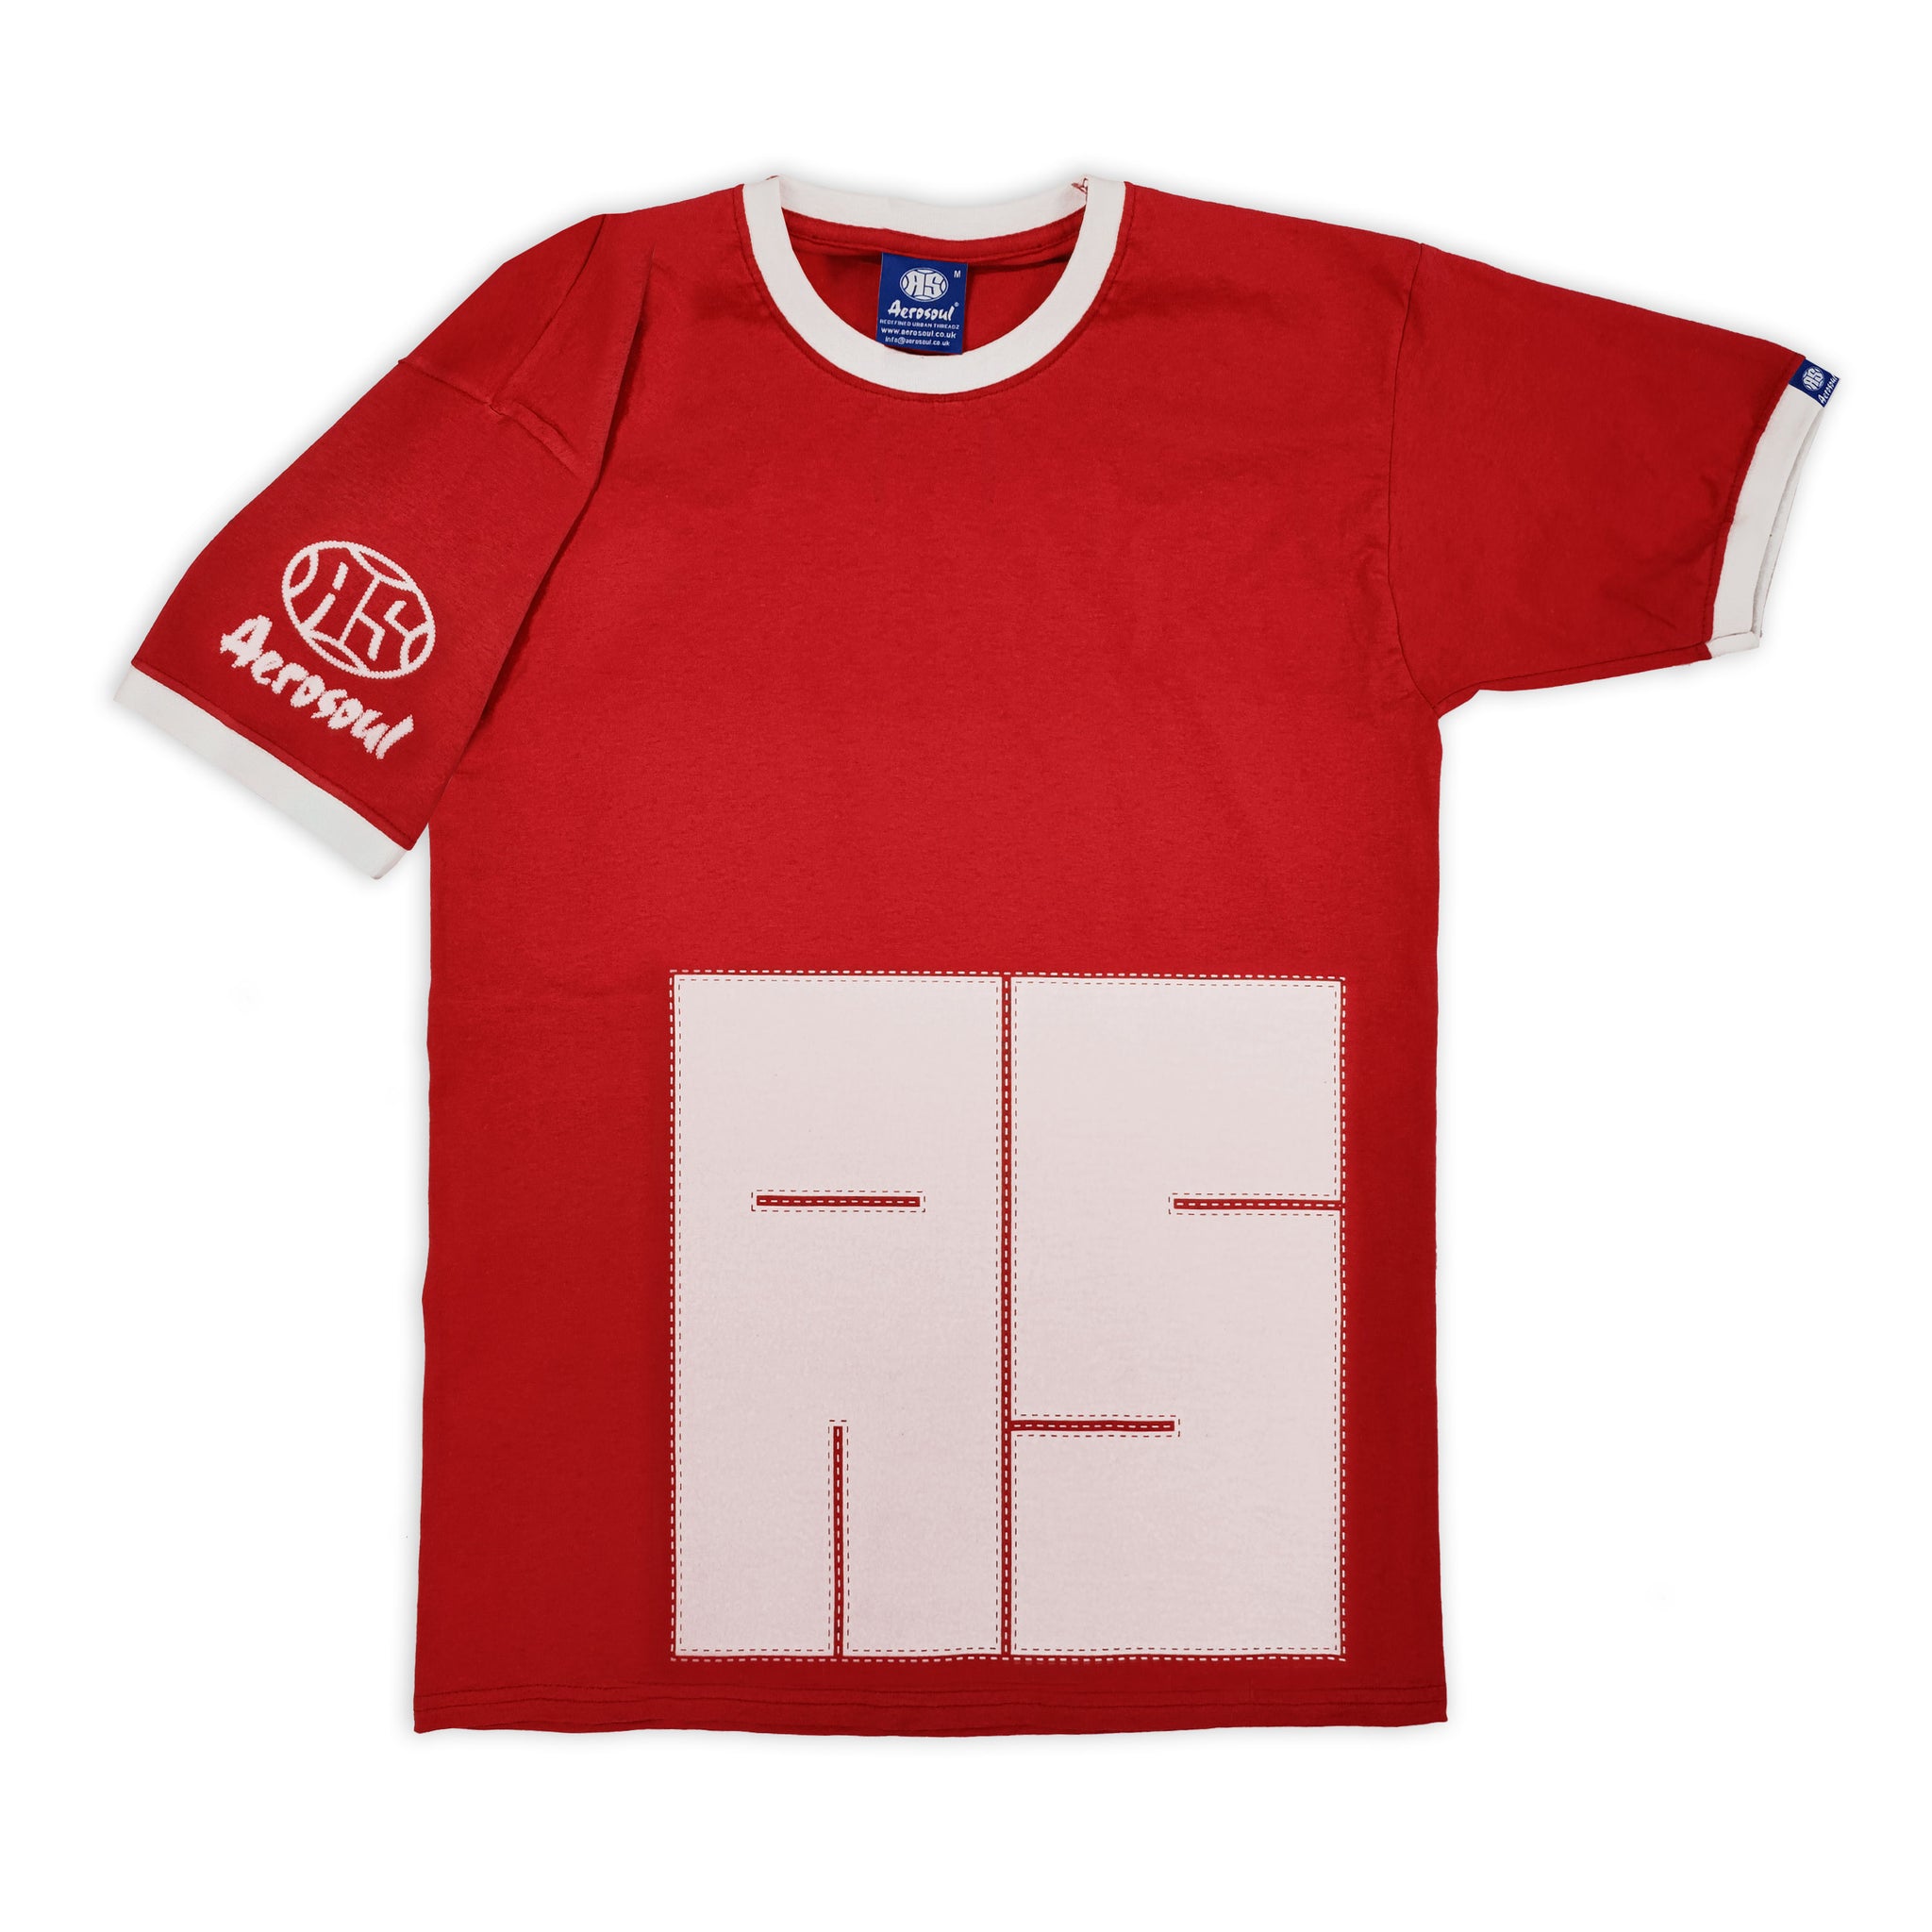 Aero-Stitch Ringer Teeshirt (Red)